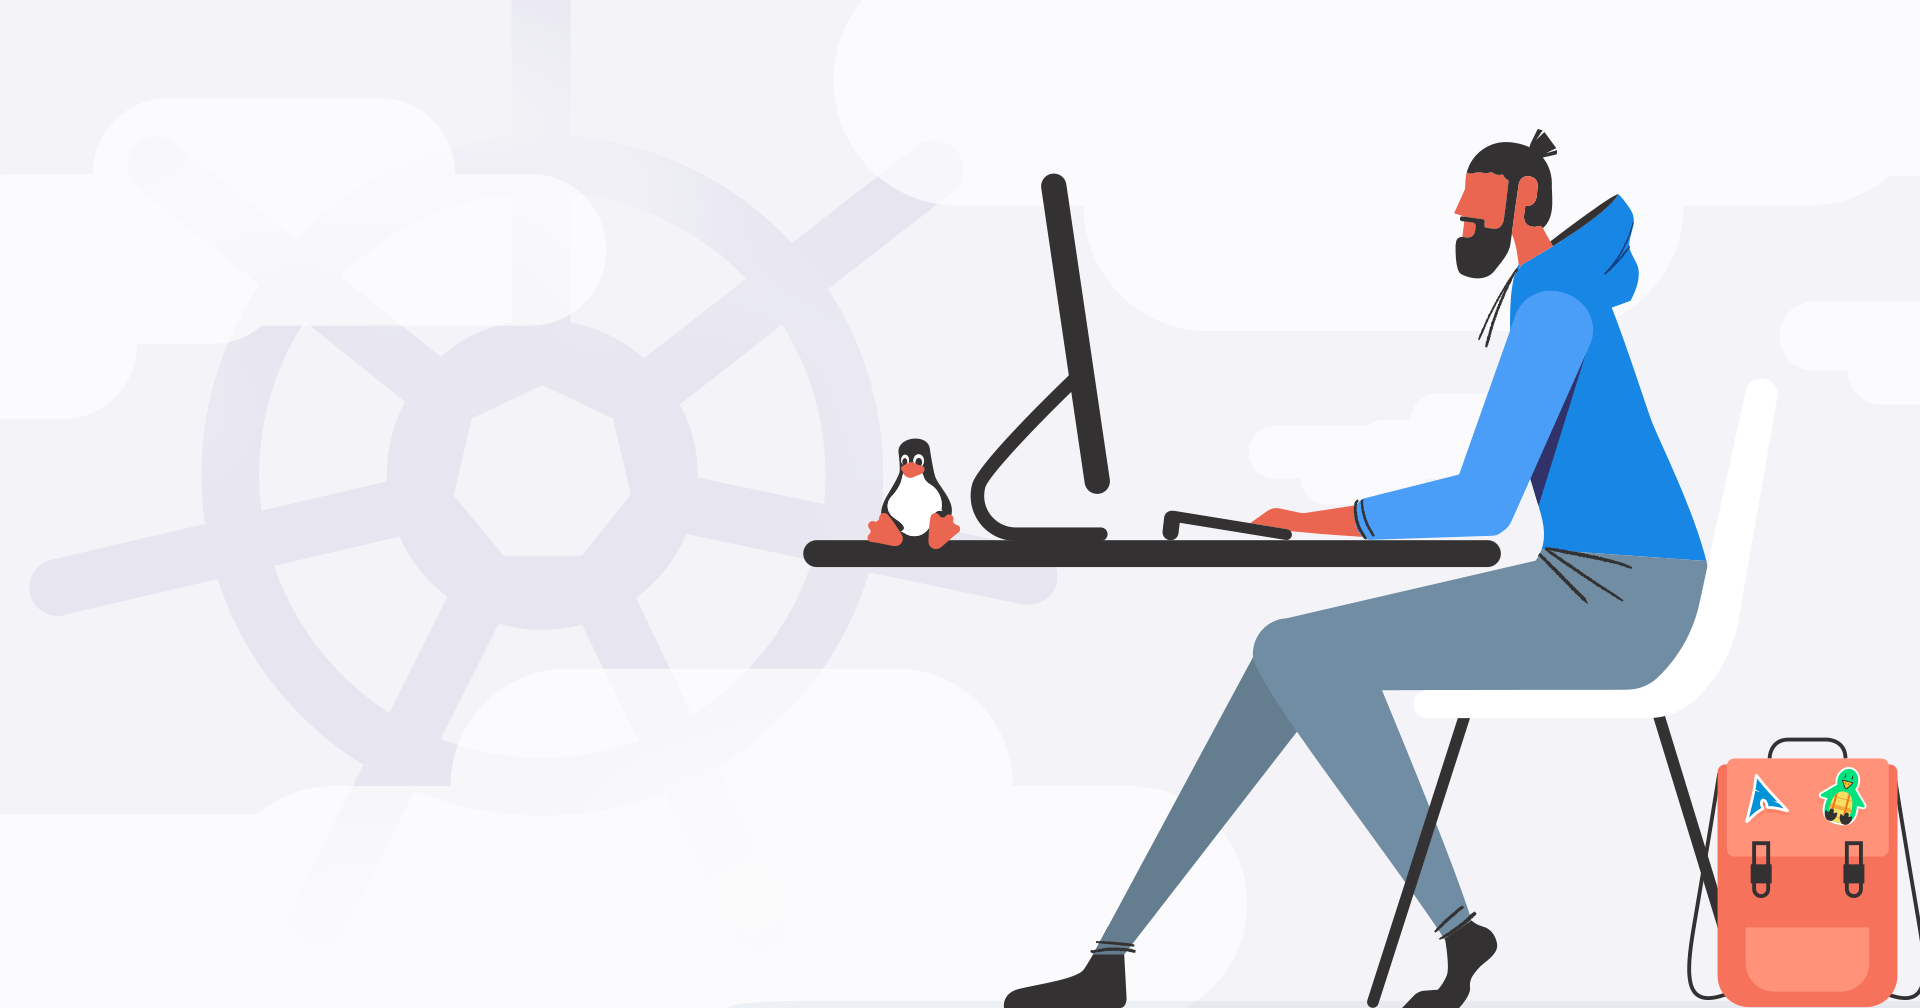 Eine Cartoon-Grafik einer Person an einem Computer mit dem Kubernetes-Logo im Hintergrund